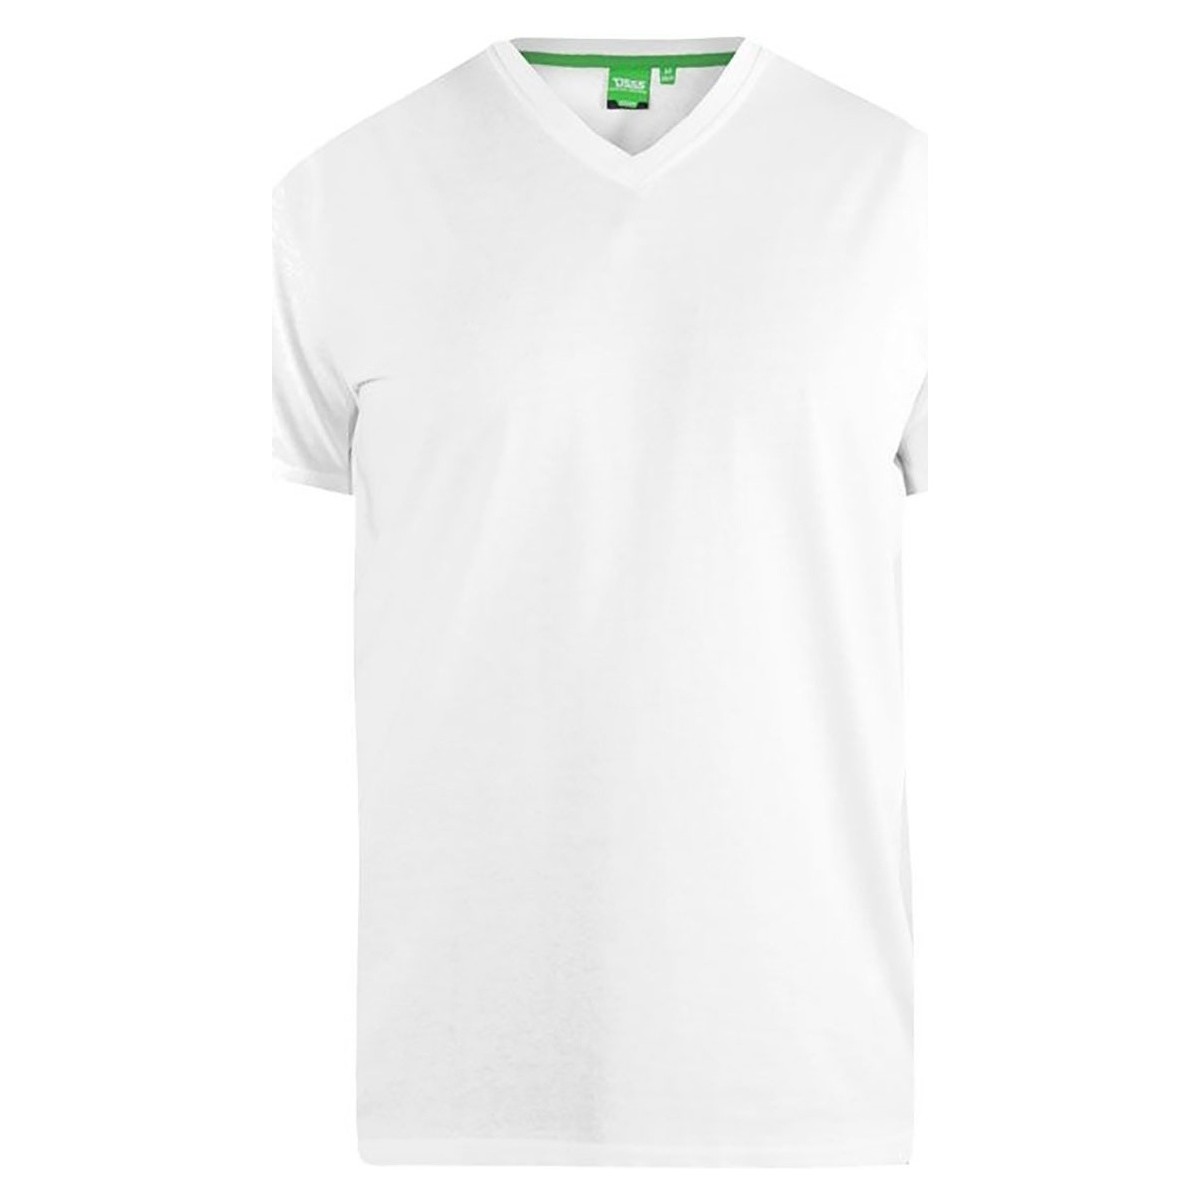 Vêtements Homme T-shirts manches longues Duke Signature D555 Blanc